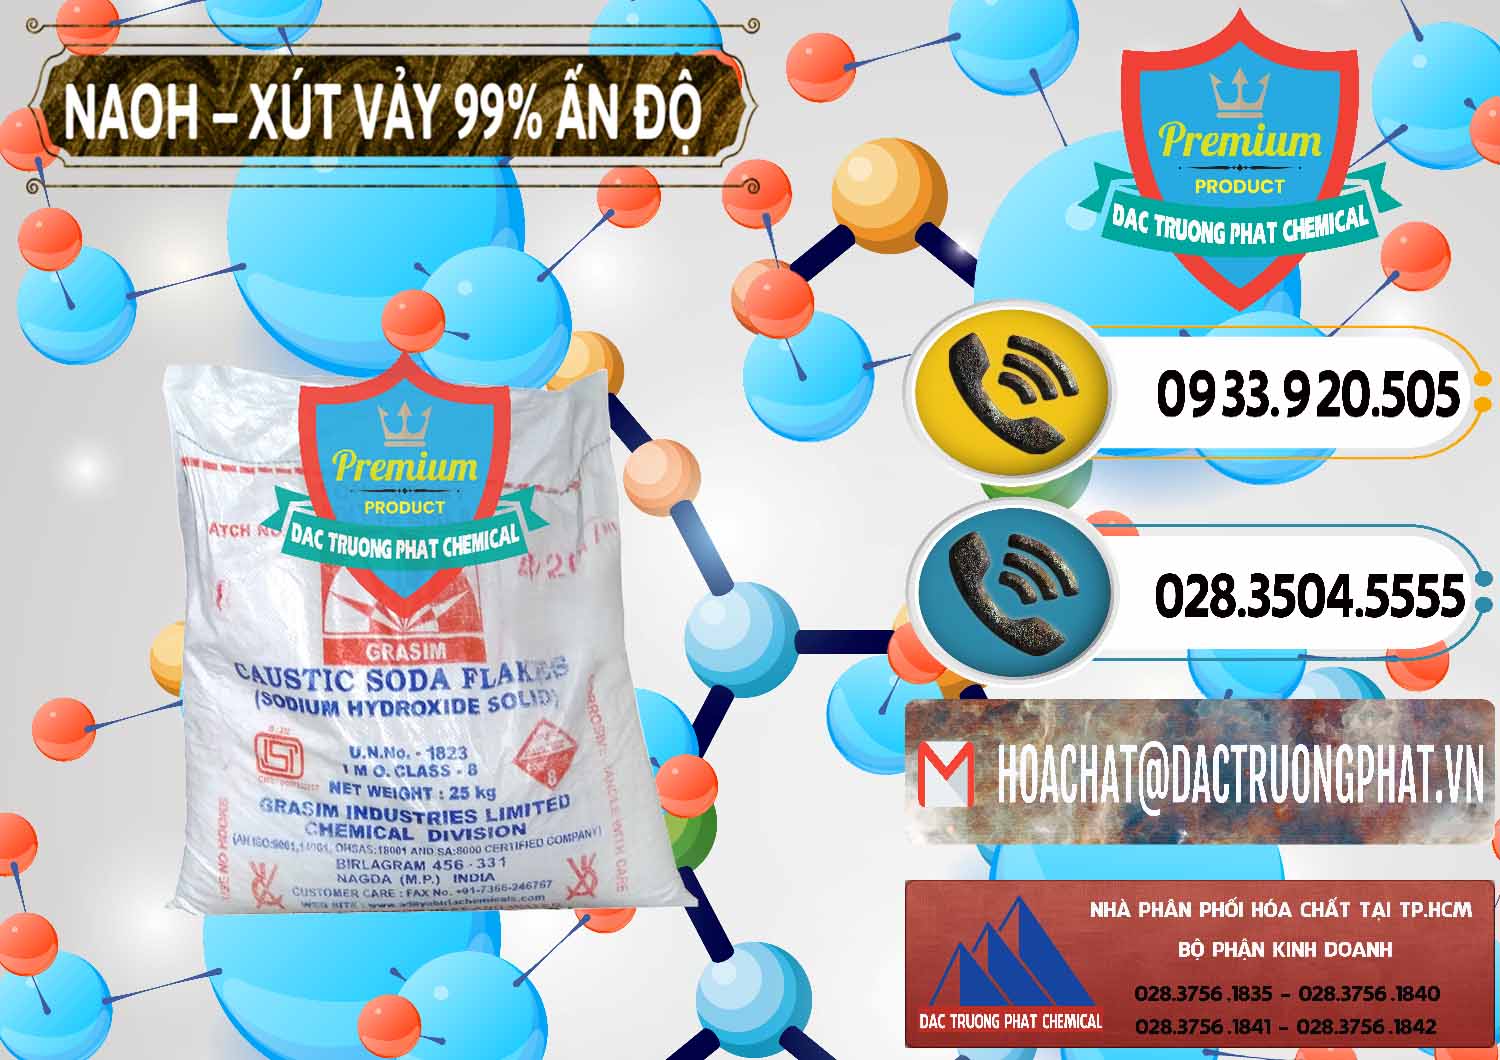 Chuyên nhập khẩu và bán Xút Vảy - NaOH Vảy 99% Aditya Birla Grasim Ấn Độ India - 0171 - Đơn vị chuyên bán ( phân phối ) hóa chất tại TP.HCM - hoachatdetnhuom.vn